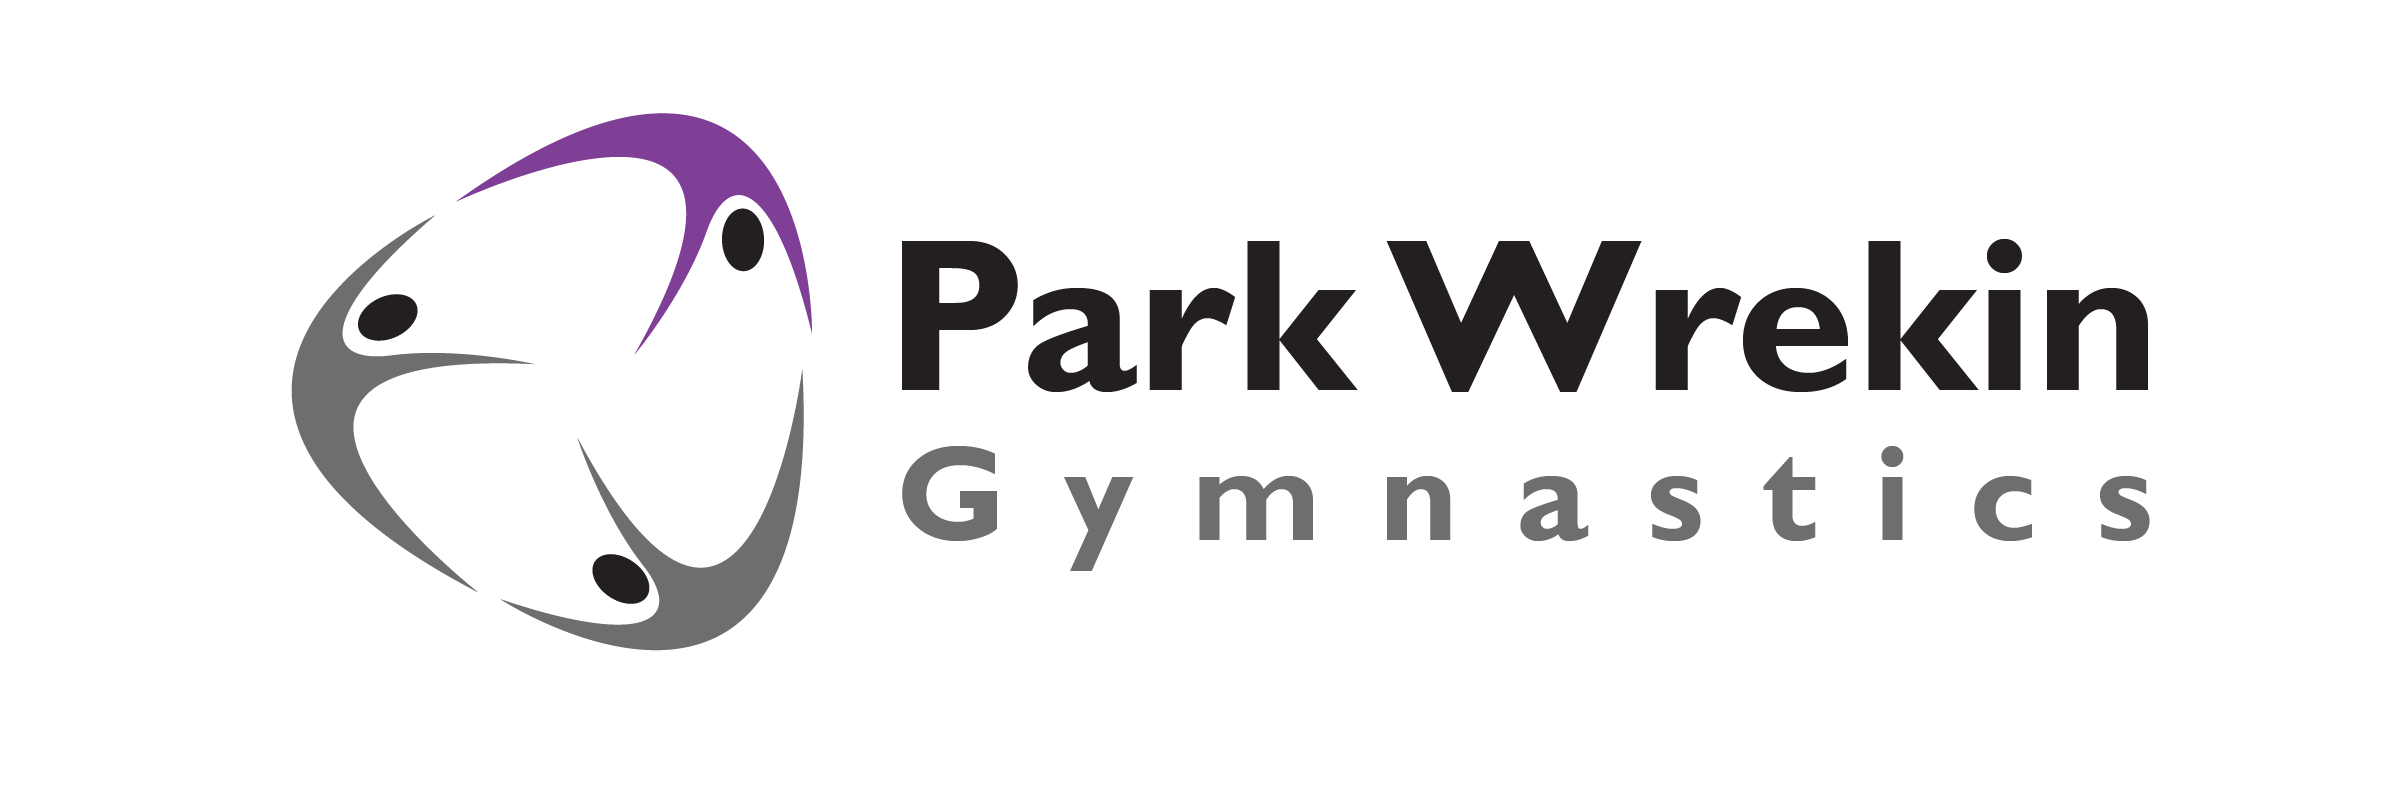 Park Wrekin Gymnastics Logo